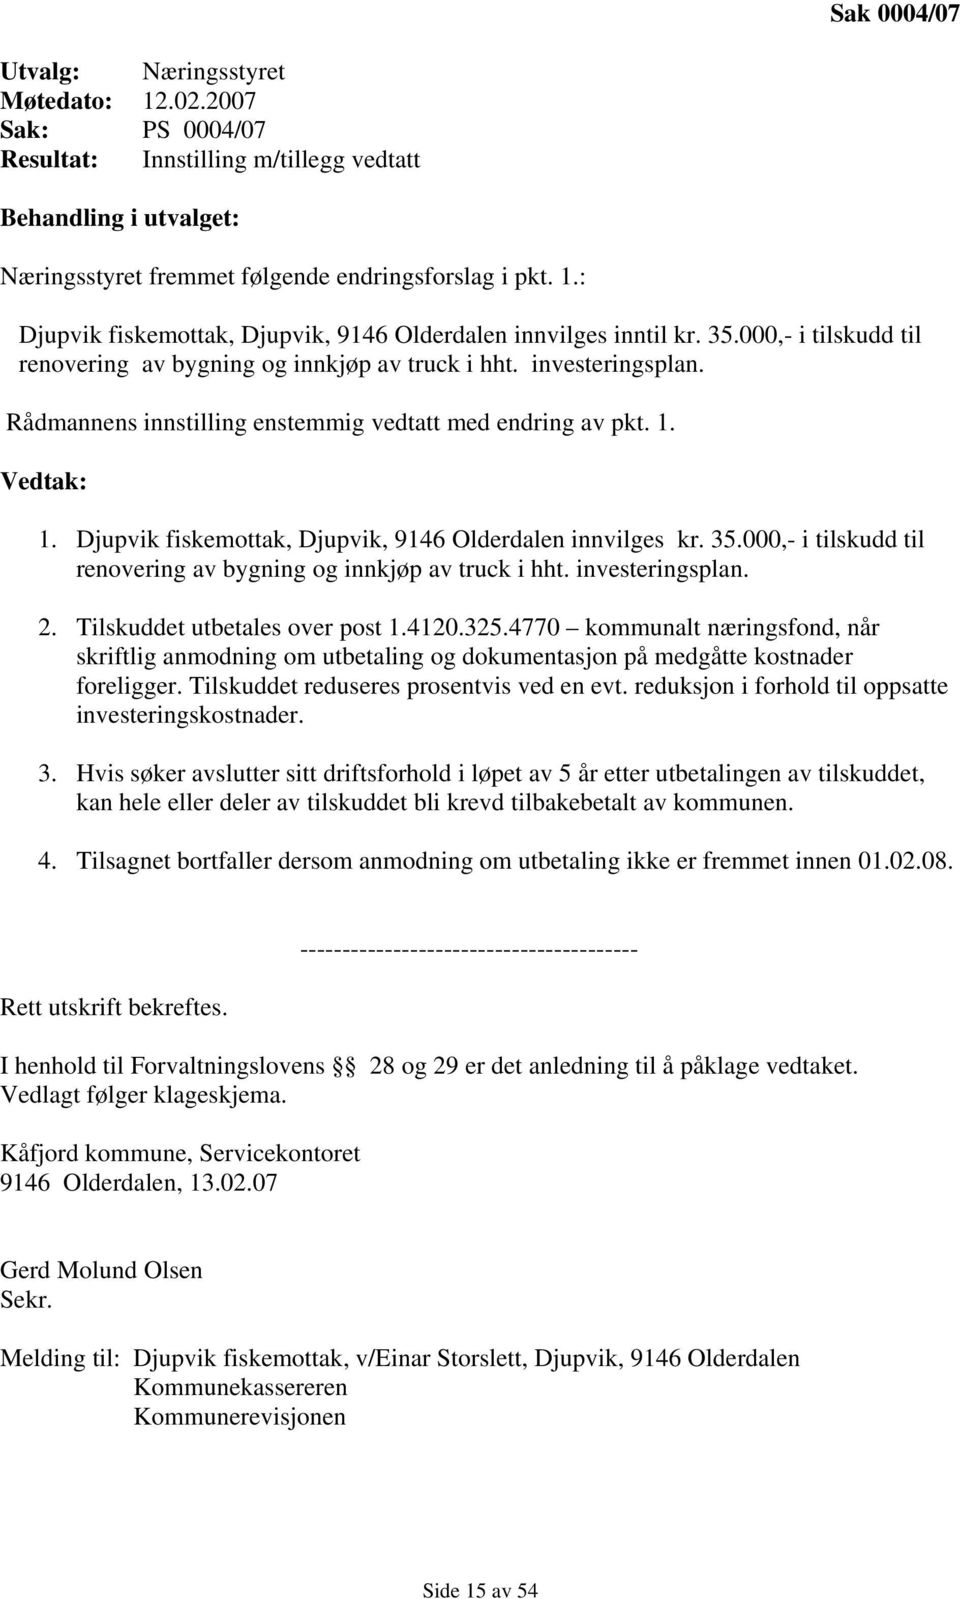 Djupvik fiskemottak, Djupvik, 9146 Olderdalen innvilges kr. 35.000,- i tilskudd til renovering av bygning og innkjøp av truck i hht. investeringsplan. 2. Tilskuddet utbetales over post 1.4120.325.